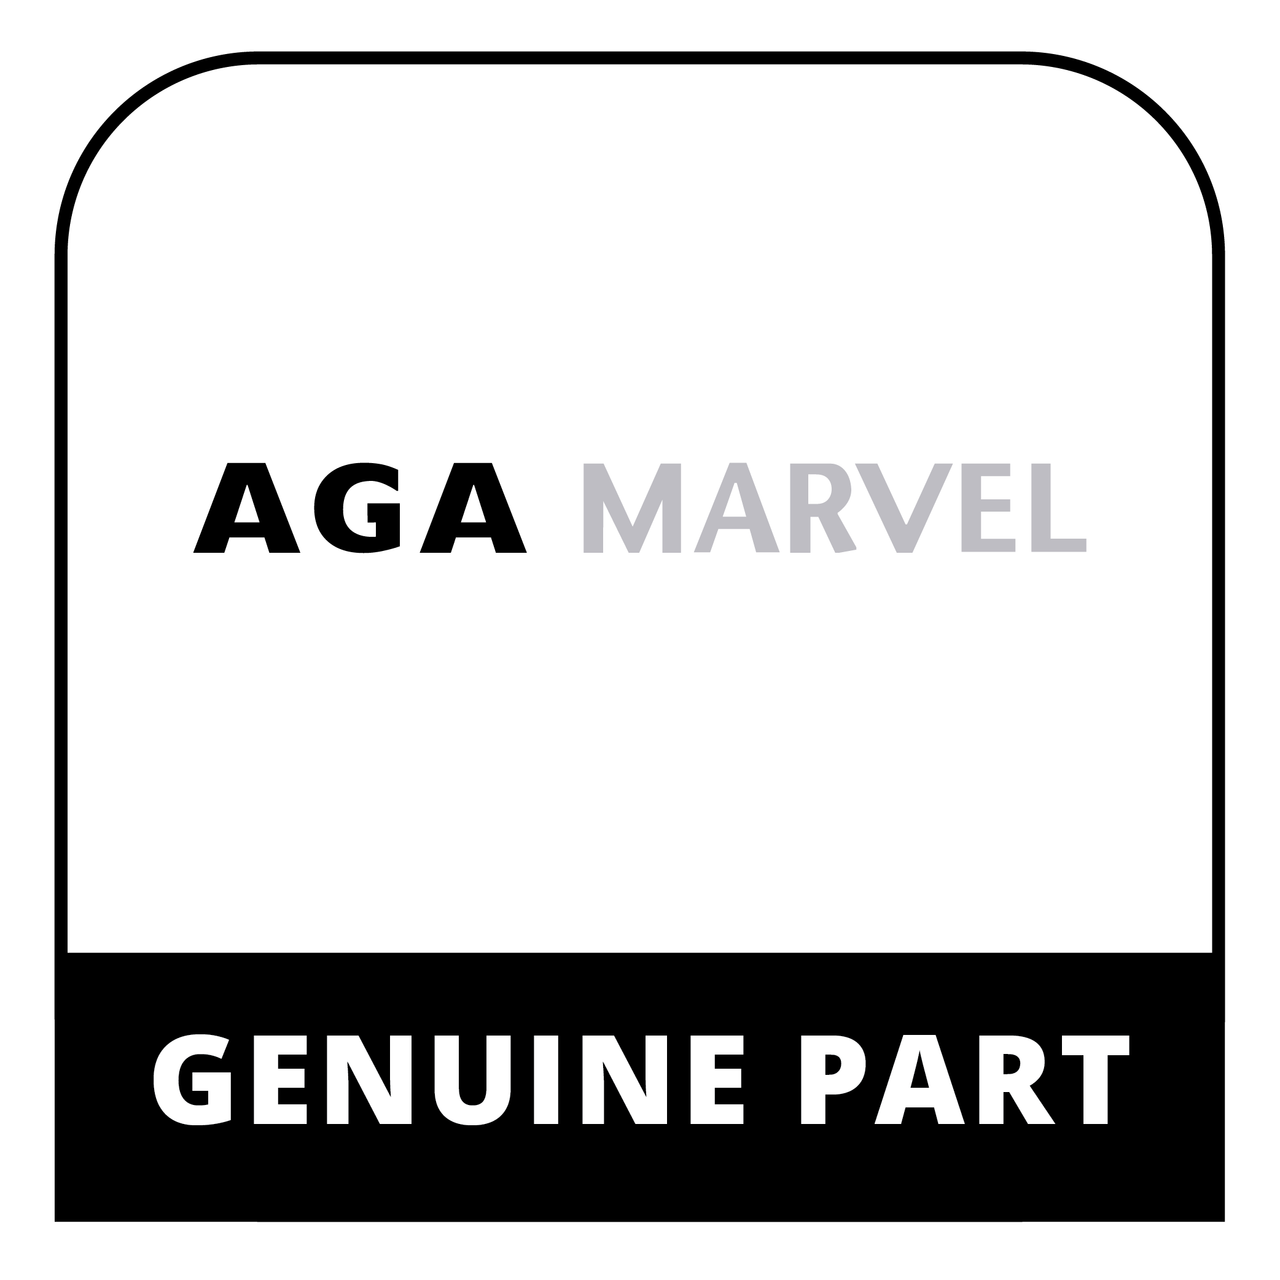 AGA Marvel RO2M321061 - Bracket Secdry Rear Firebrick Opj - Genuine AGA Marvel Part